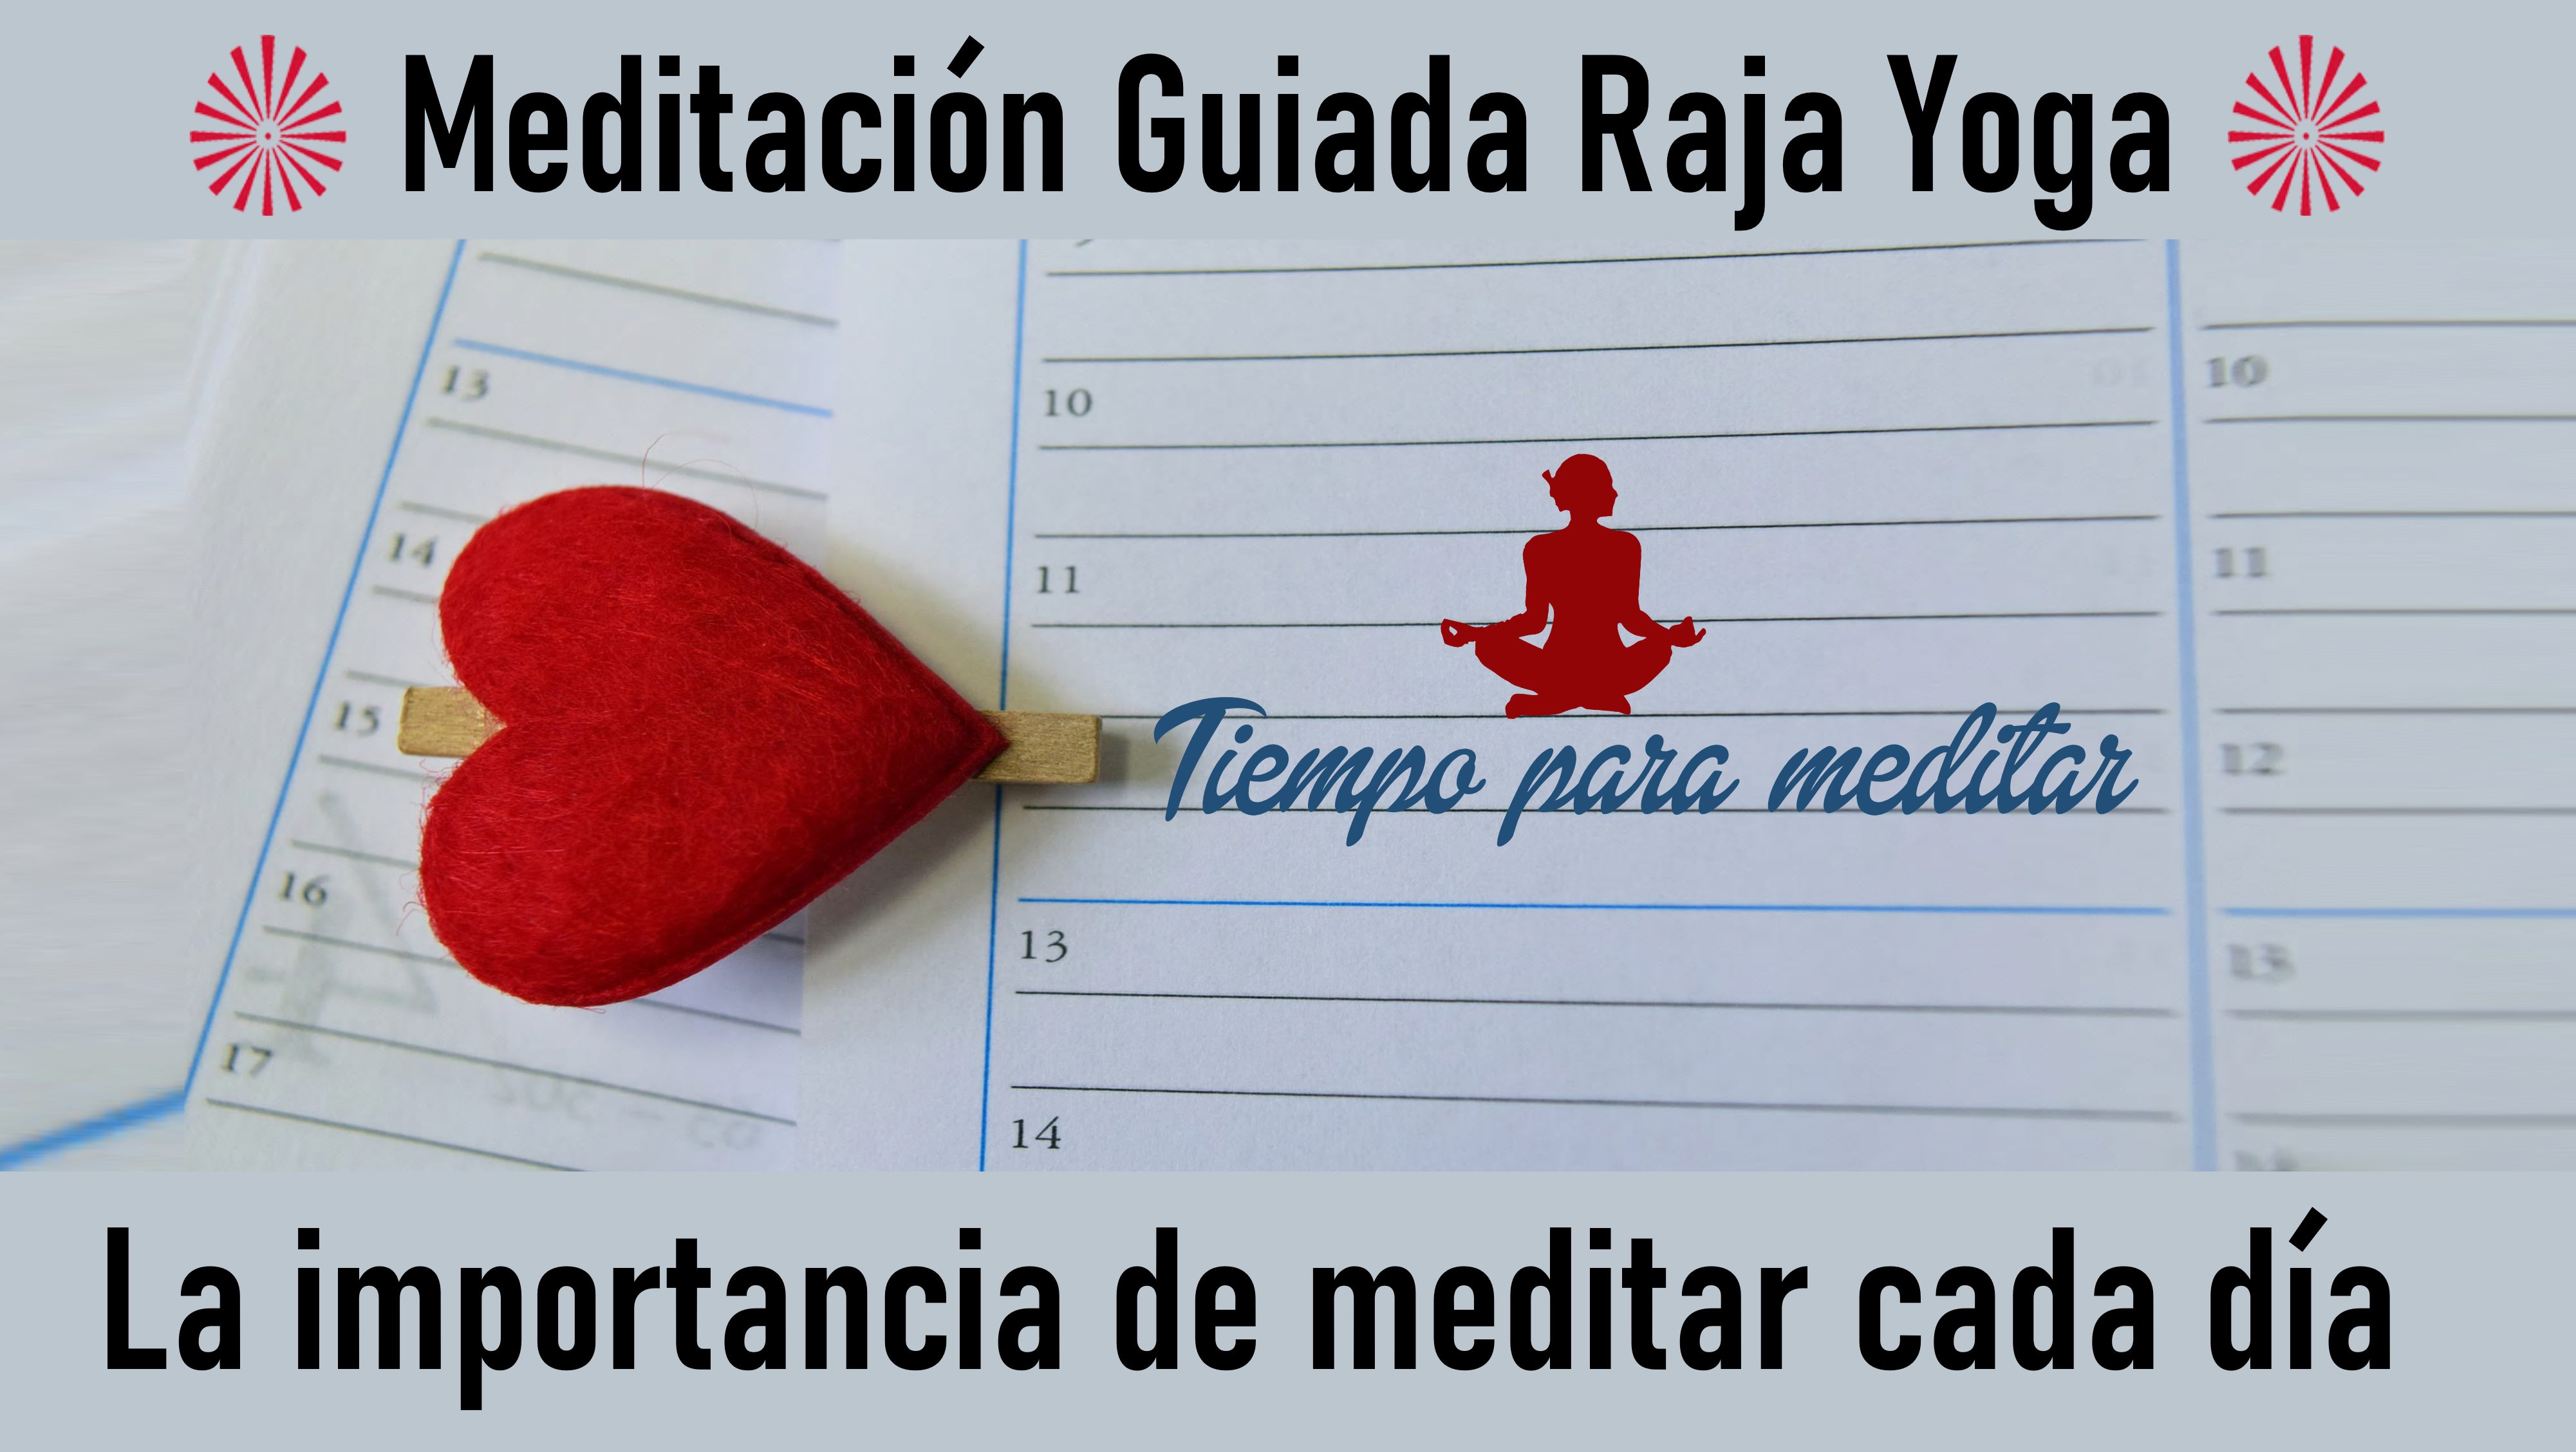 Meditación Raja Yoga: La Importancia de Meditar Cada Día (10Junio 2020) On-line desde Sevilla